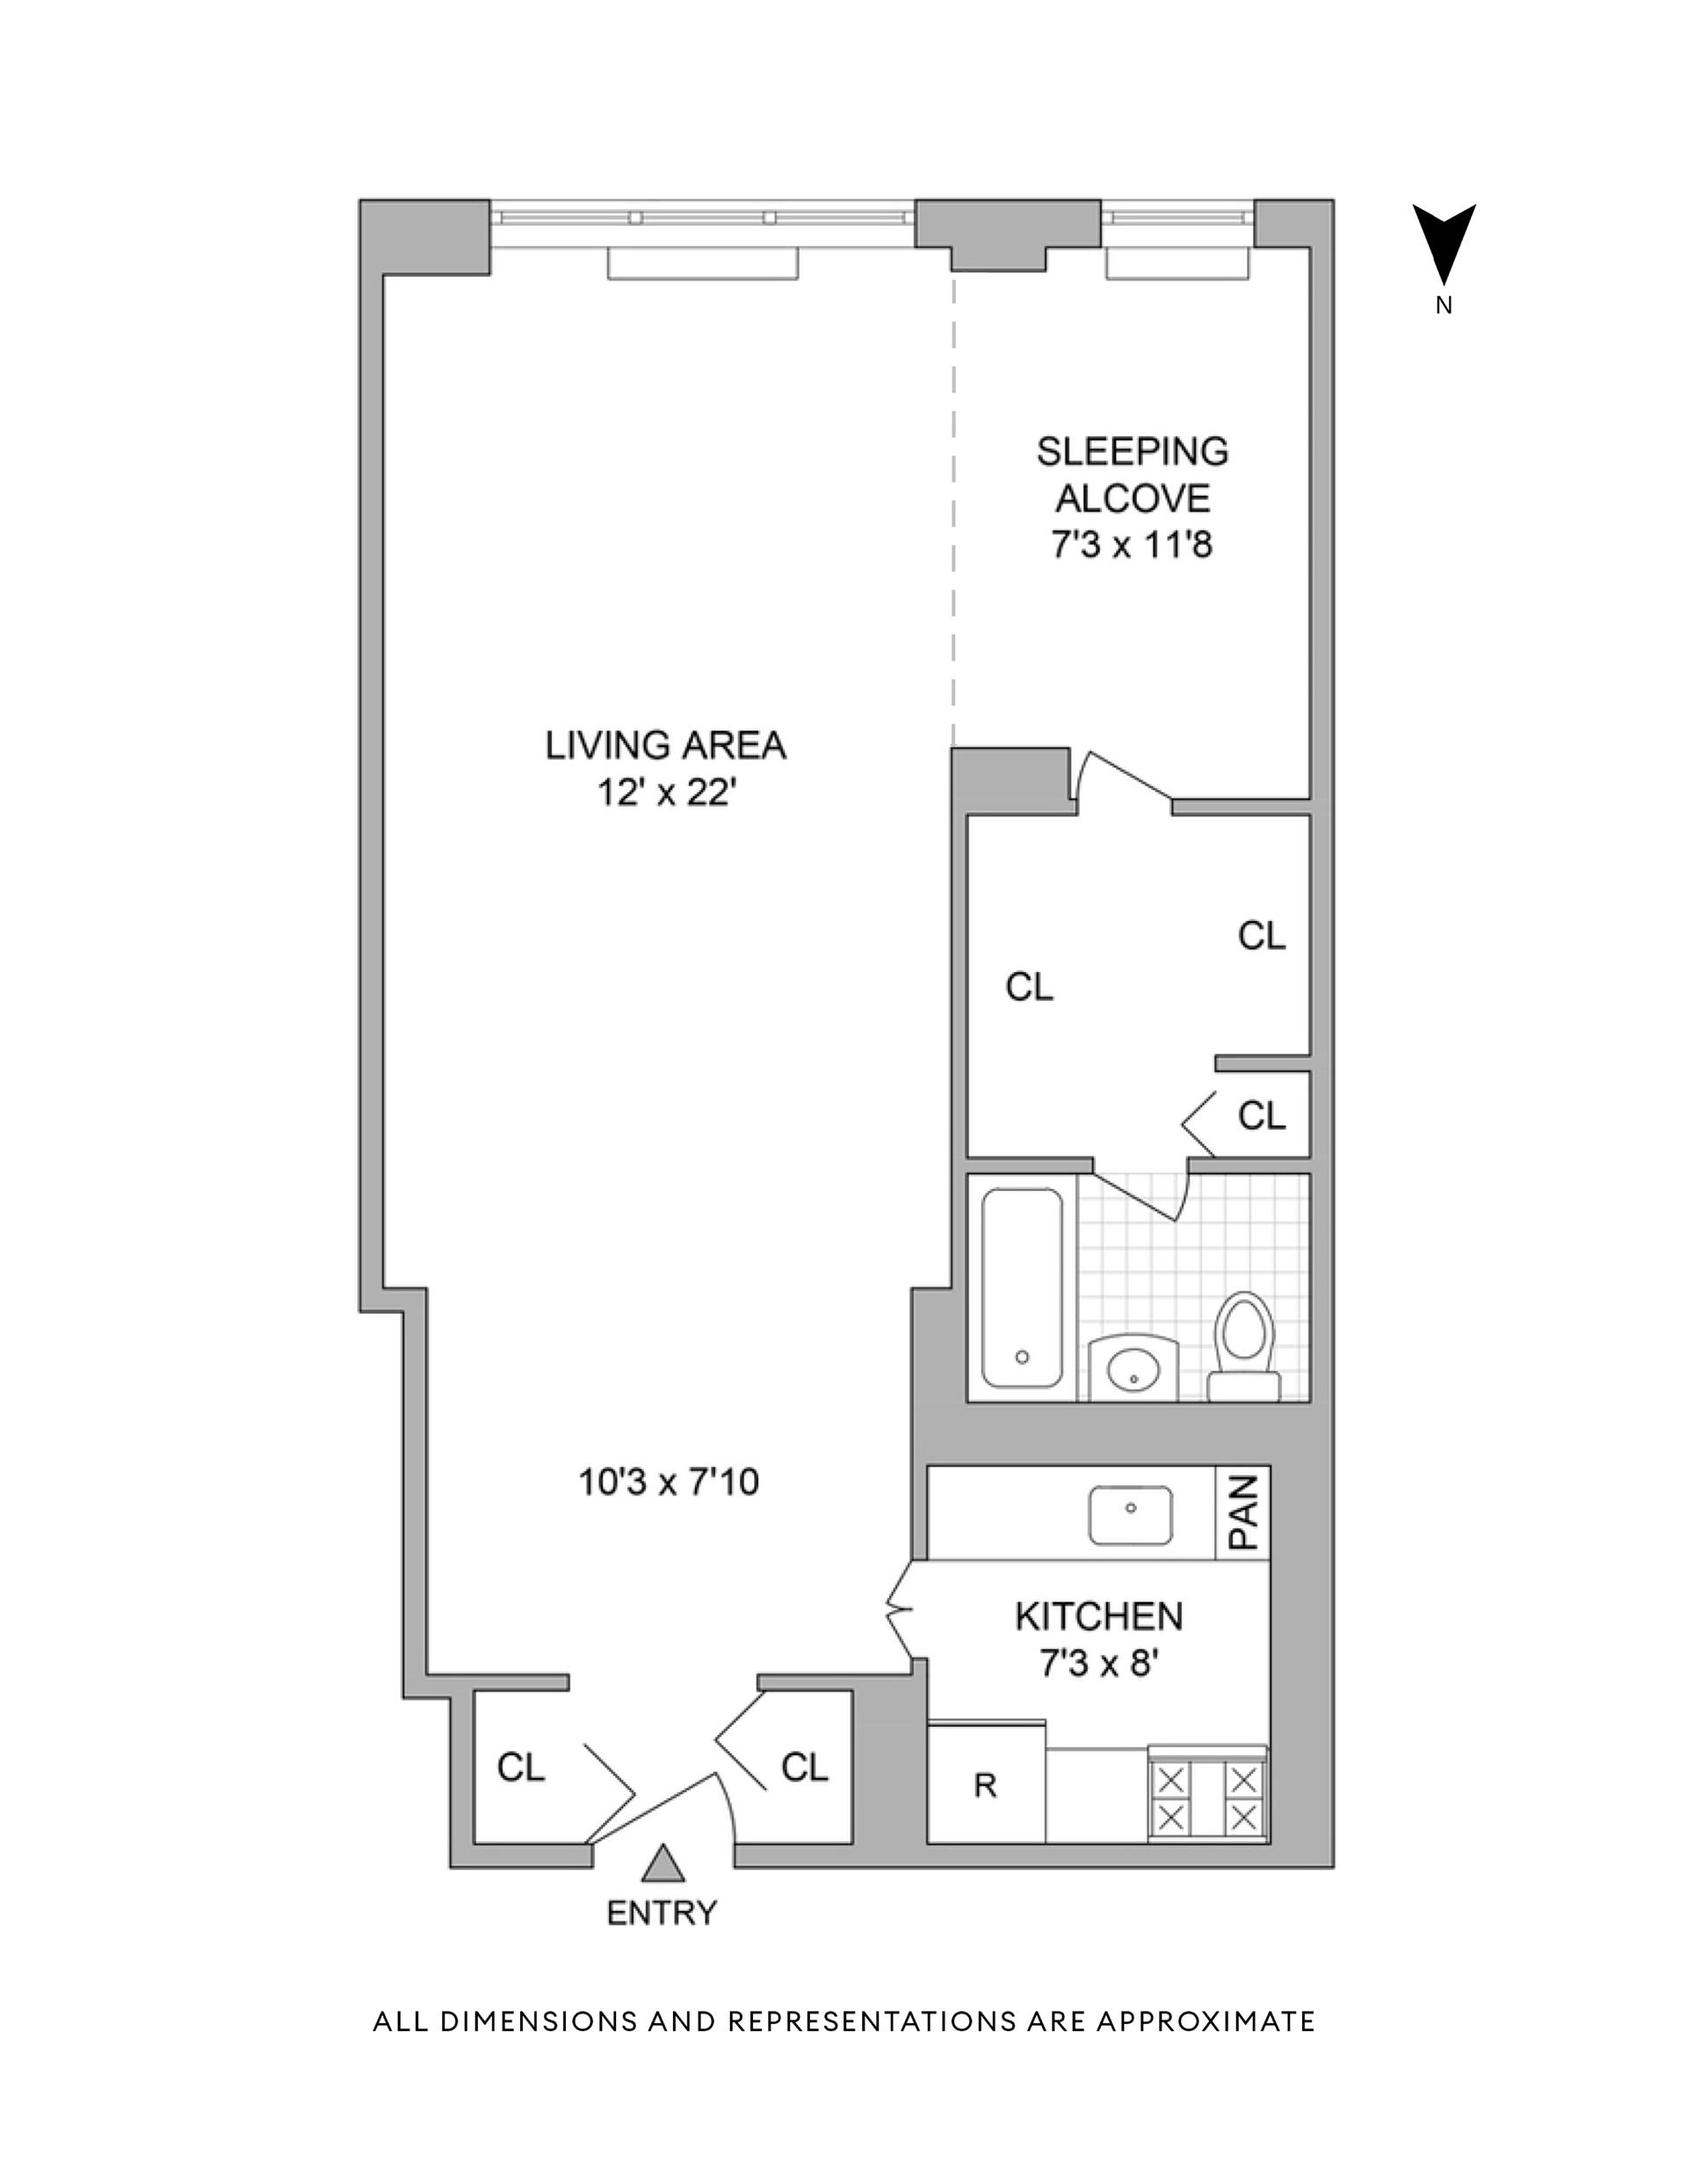 Floorplan for 205 3rd Avenue, 2R